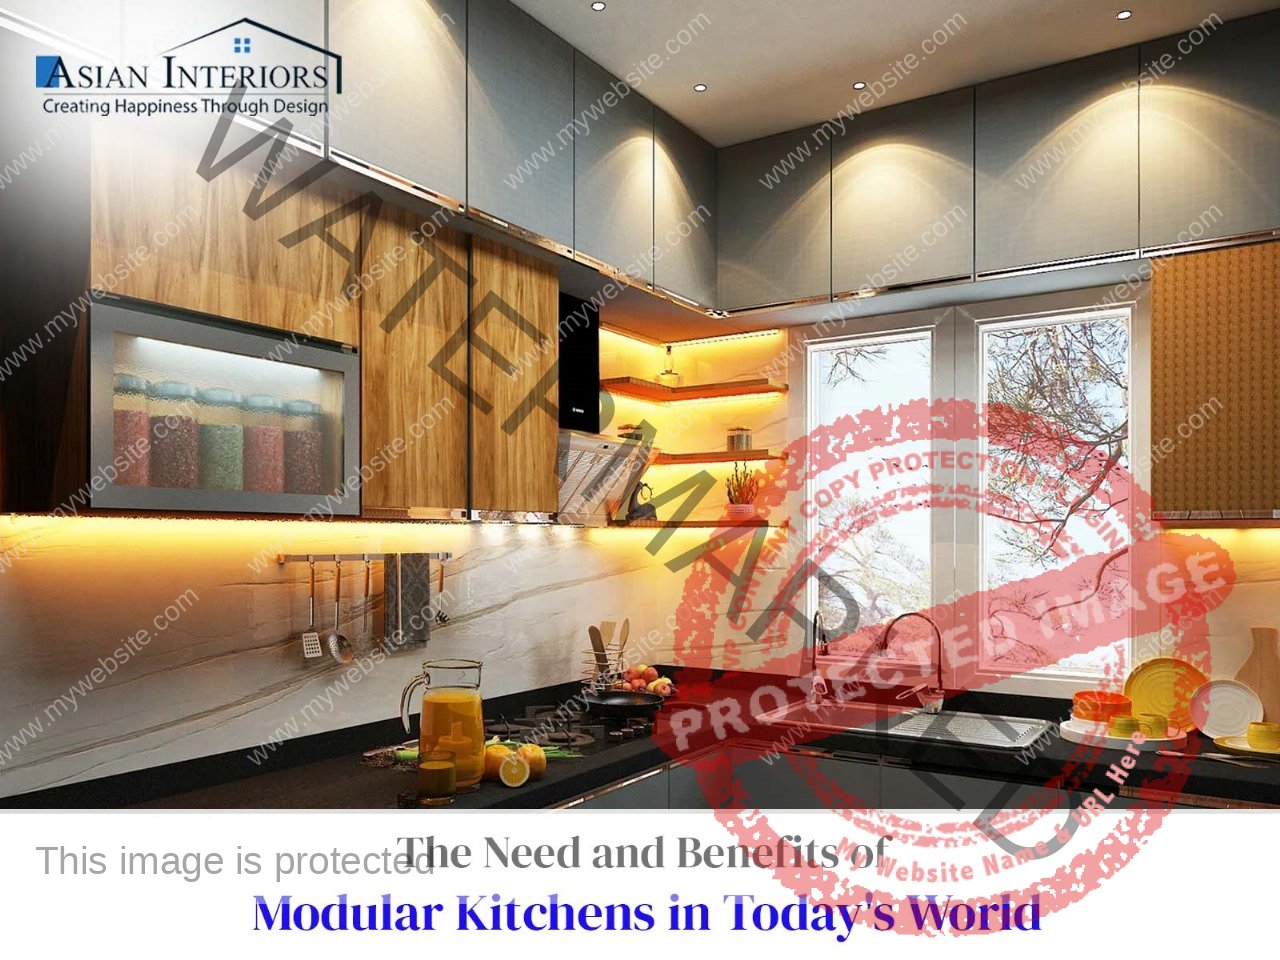 modular kitchen design in kolkata